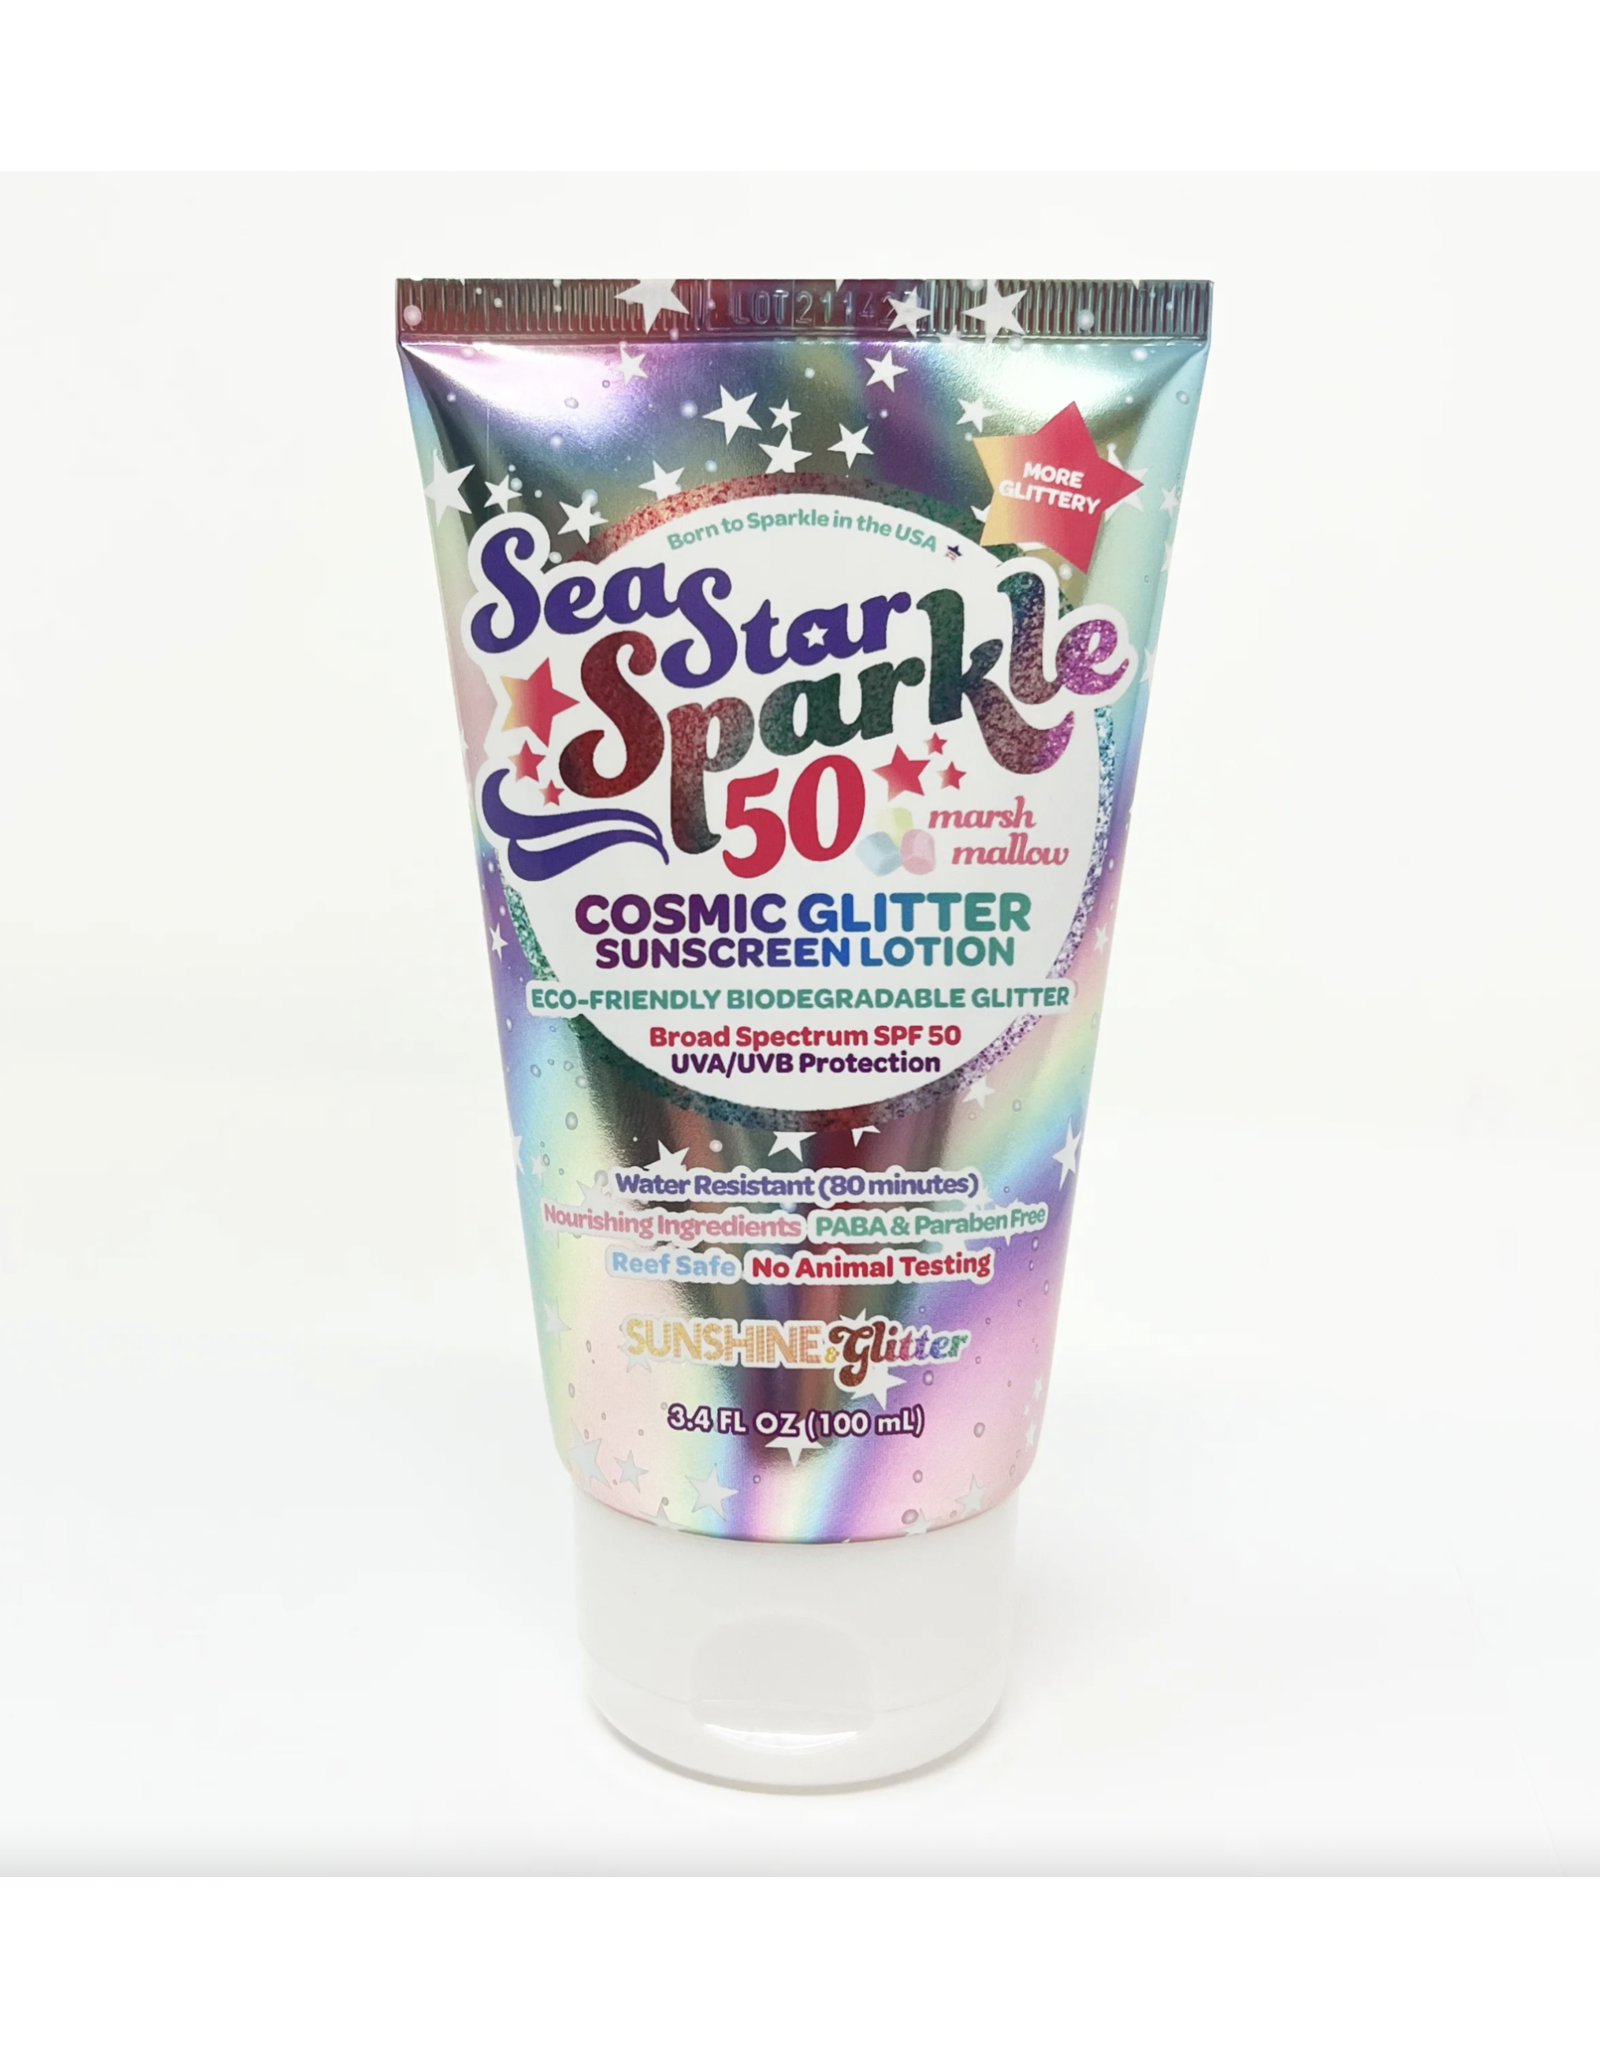 Sunshine & Glitter Sea Star Sparkle SPF 50+ Sunscreen - Cosmic Glitter